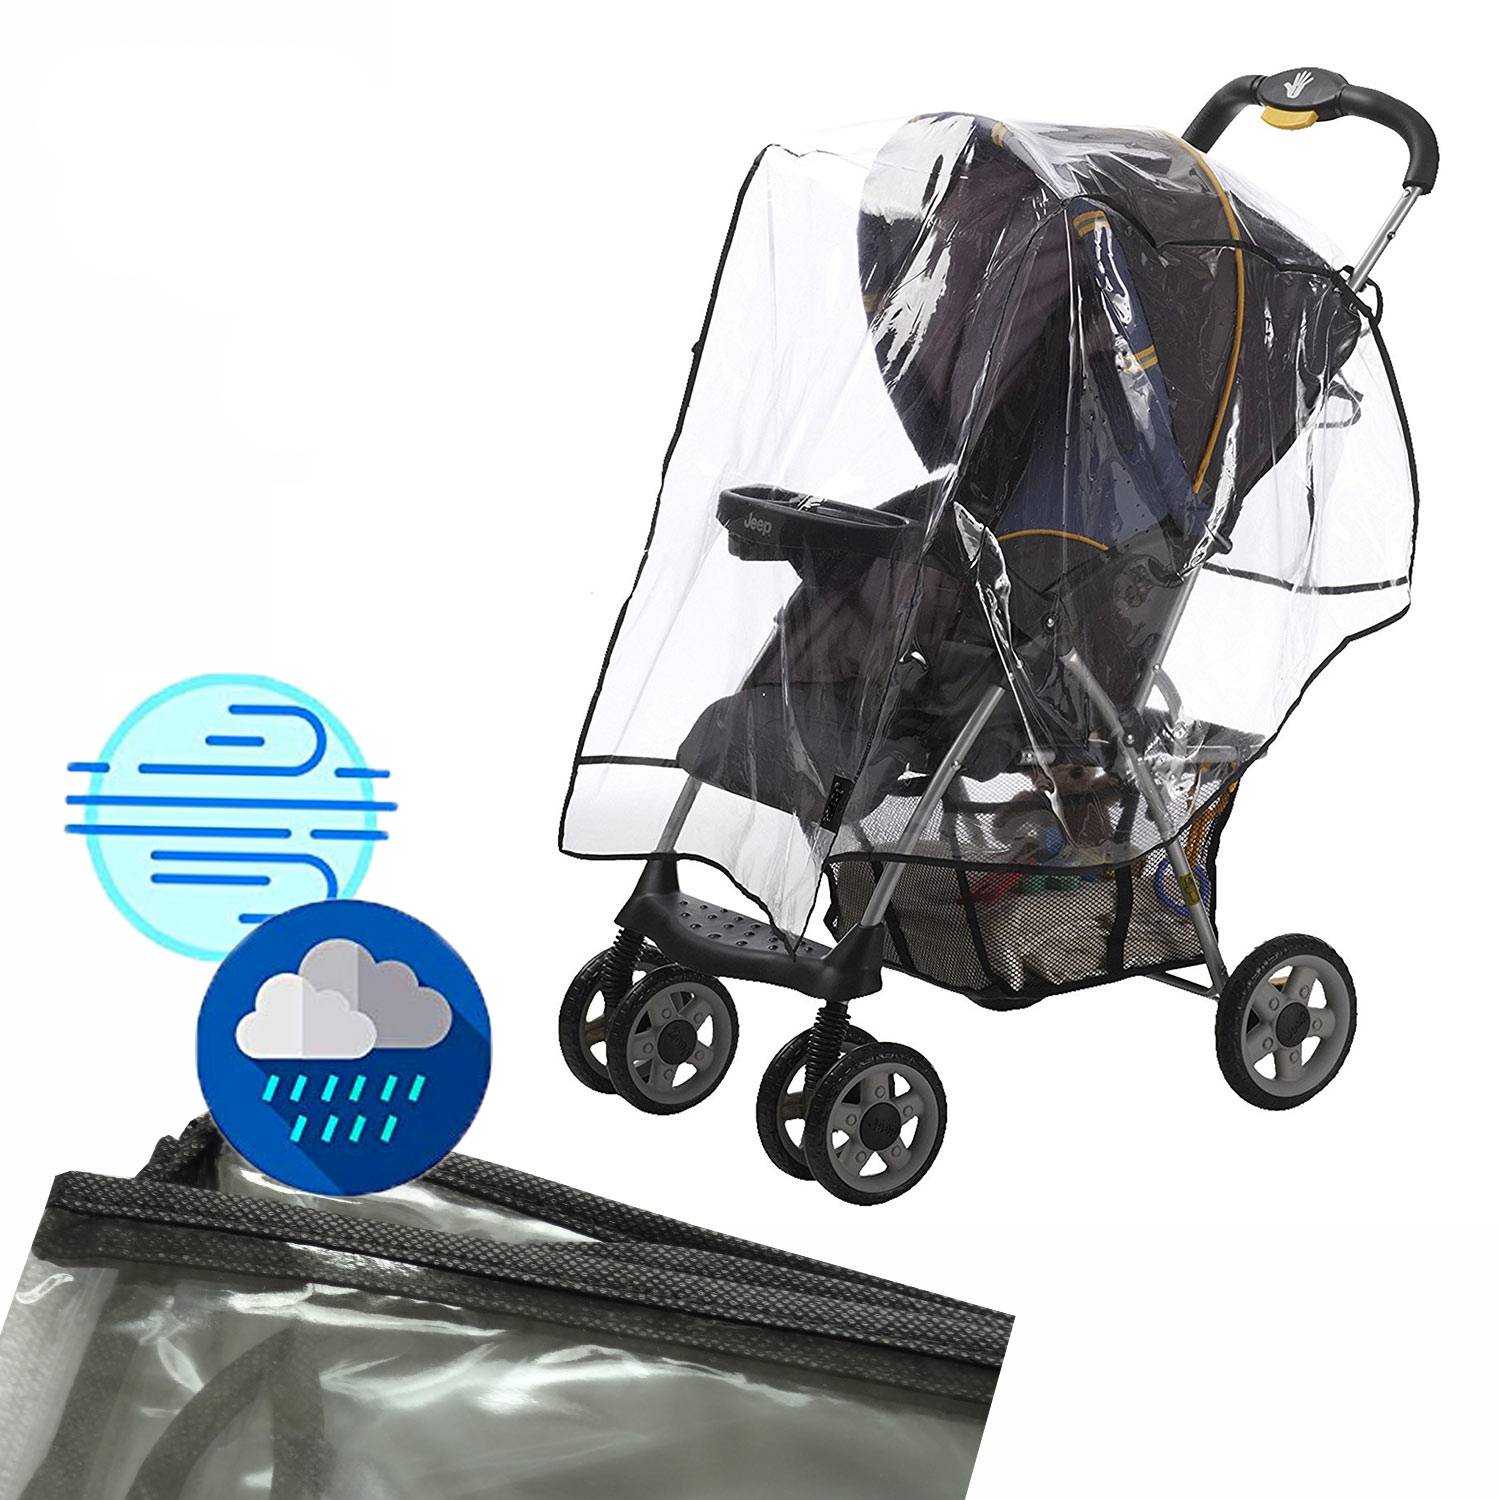 Plasticos de lluvia para carros de bebé